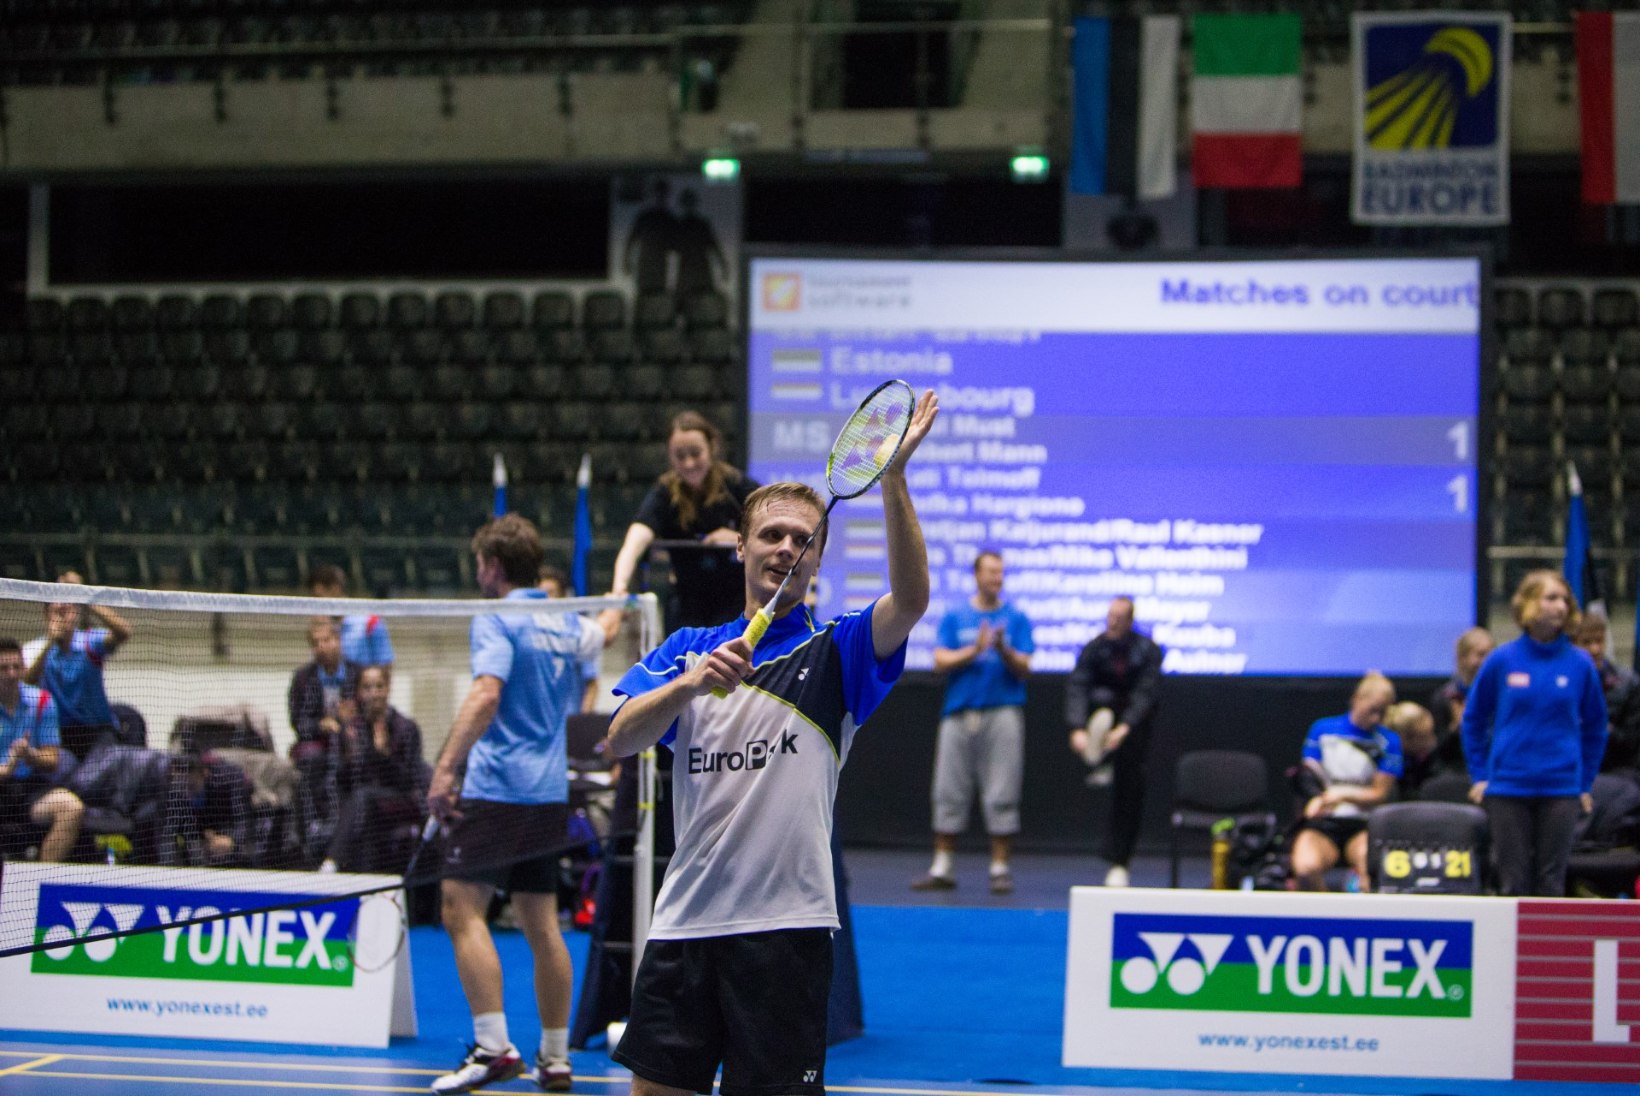 Raul Mustale kaks head uudist: võitis Sofia turniiri ja tõusis maailma edetabelis 11 koha võrra!